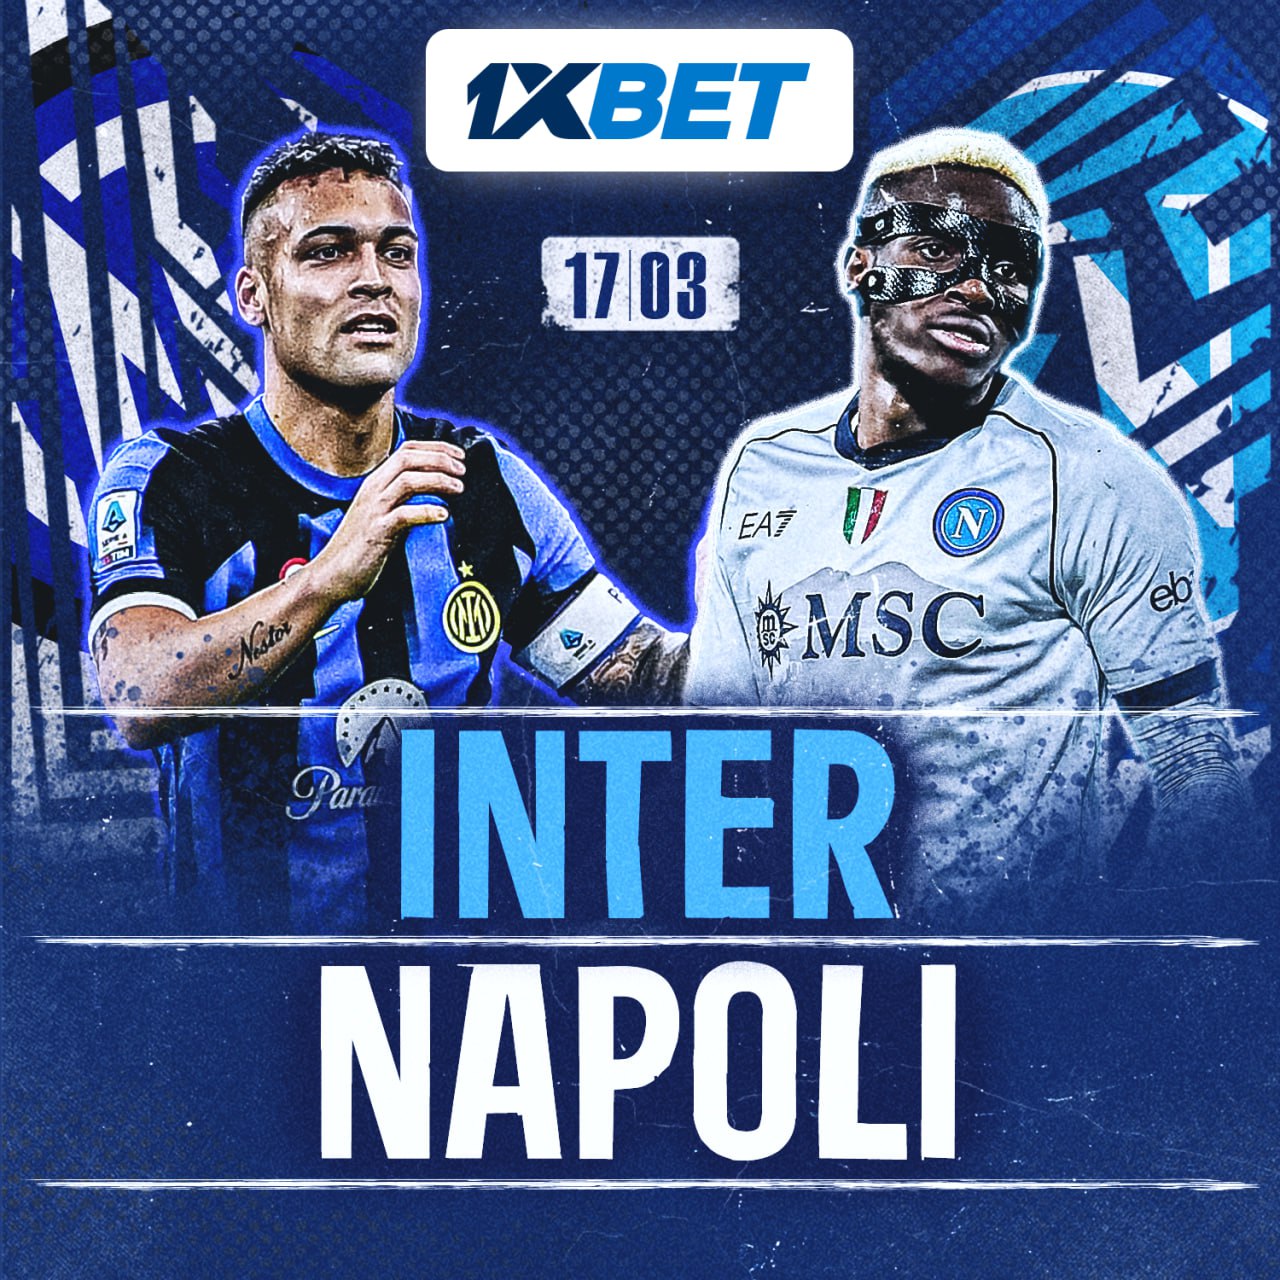 Inter-SSC Naples:apprends-en davantage sur le match entre le futur champion et le champion en titre